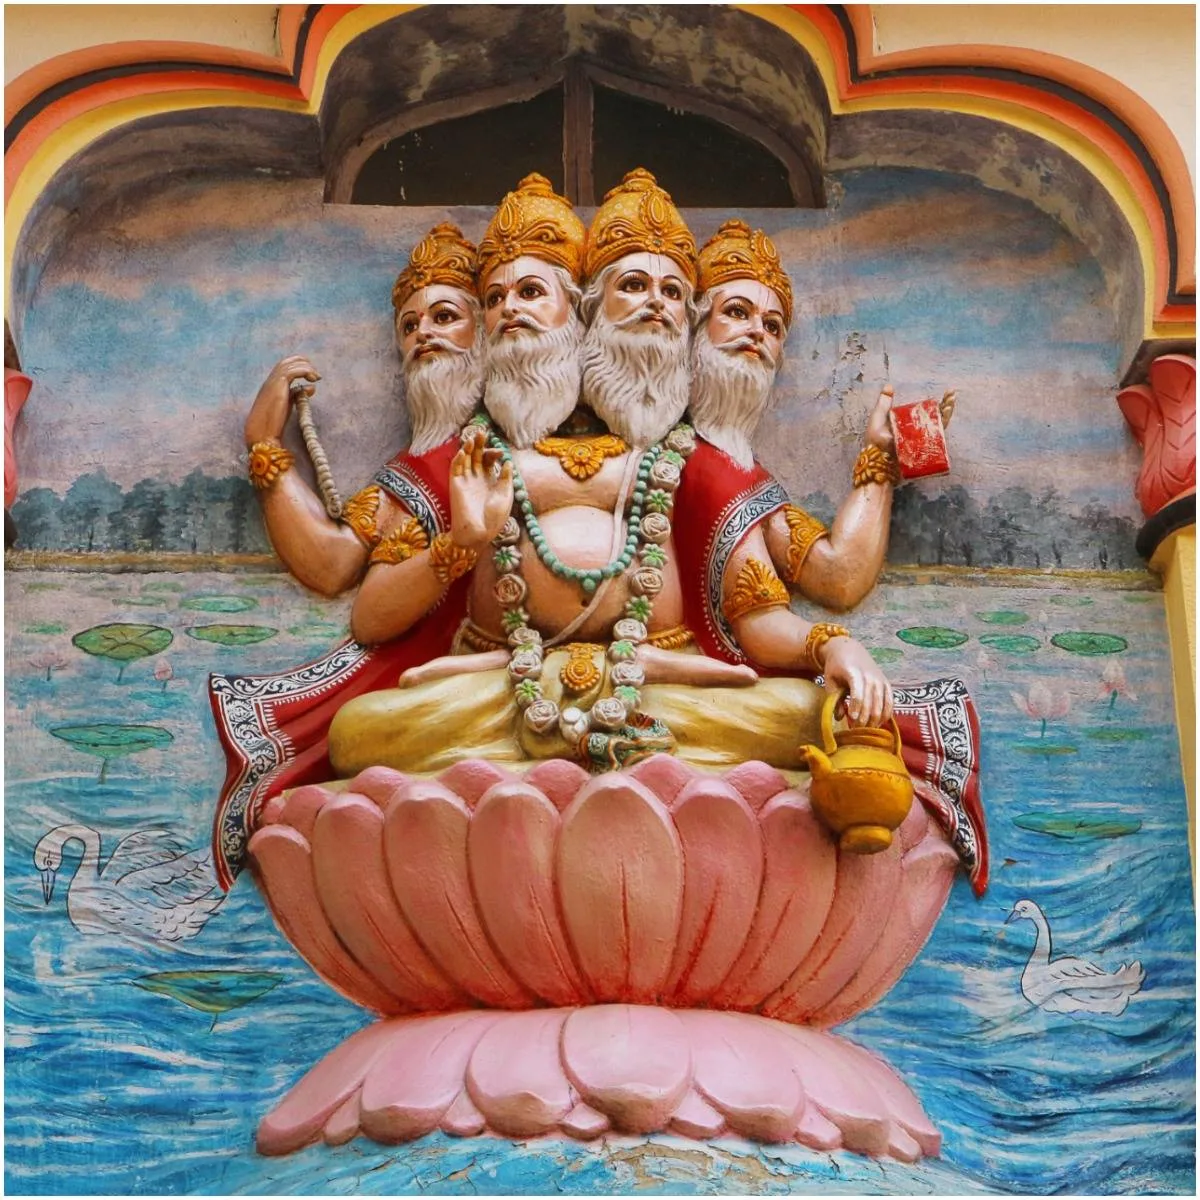 Hindu god Brahma